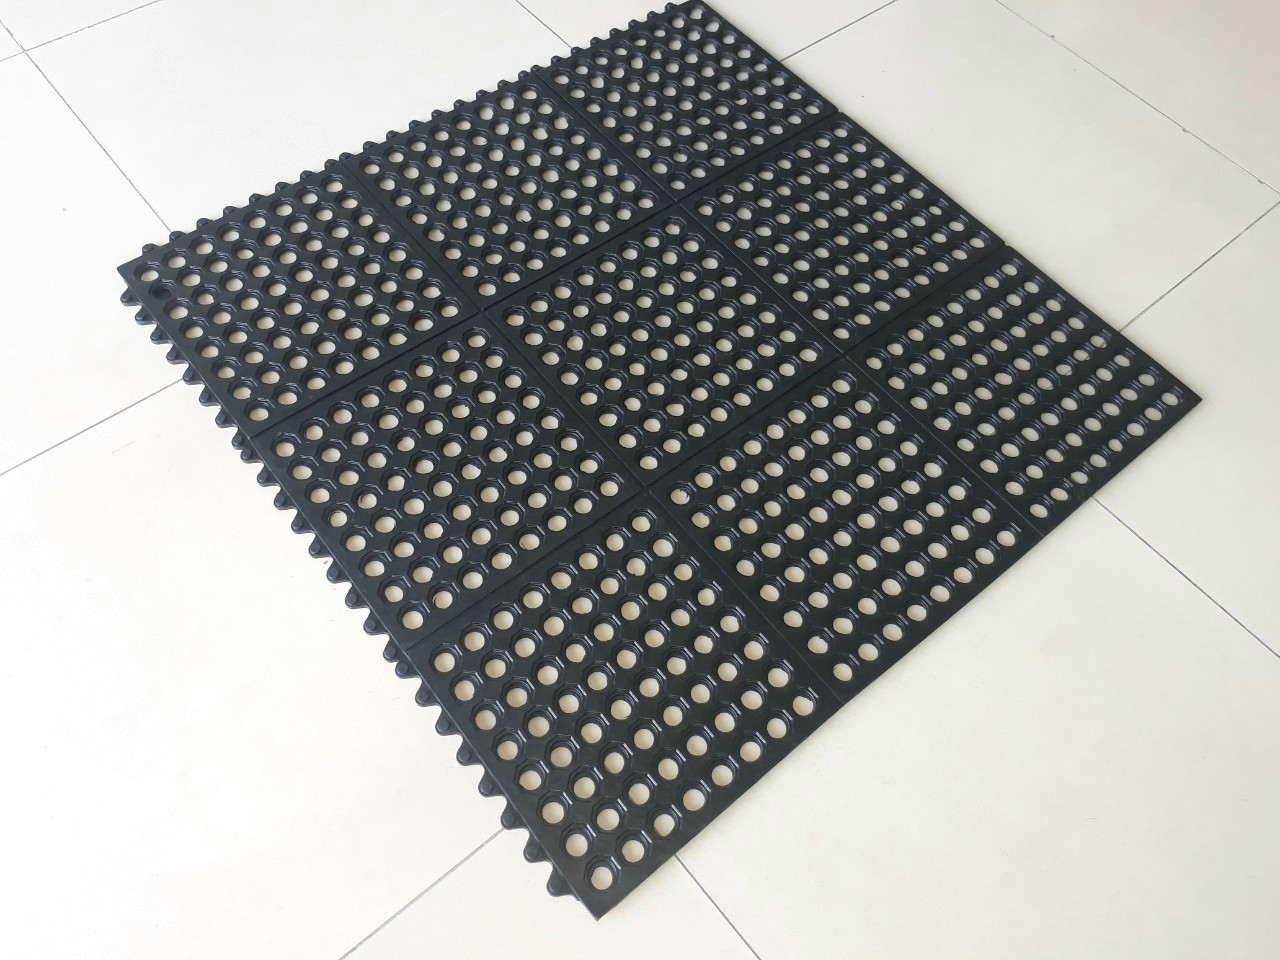 thảm nhà bếp chống trơn trượt chất liệu cao su HouseMat H710 lắp ghép dài 91cm x rộng 91cm x dày 1.2cm